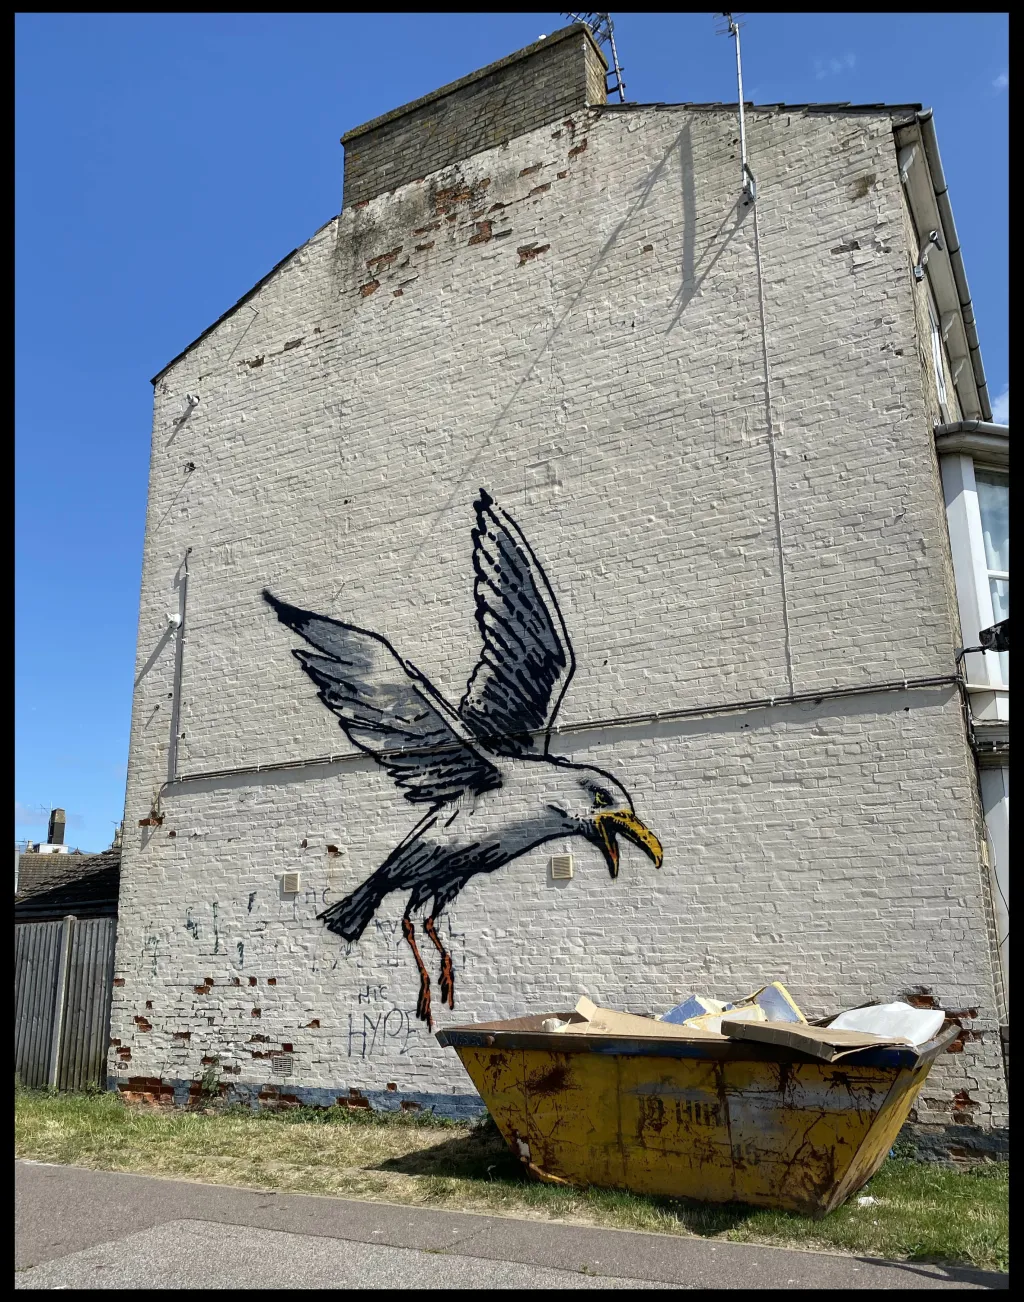 Jedno z nejnovějších Banksyho děl. V Lowestoftu v Suffolku se objevil obří racek, který si chce pochutnat na „hranolcích“ z materiálu na zateplení